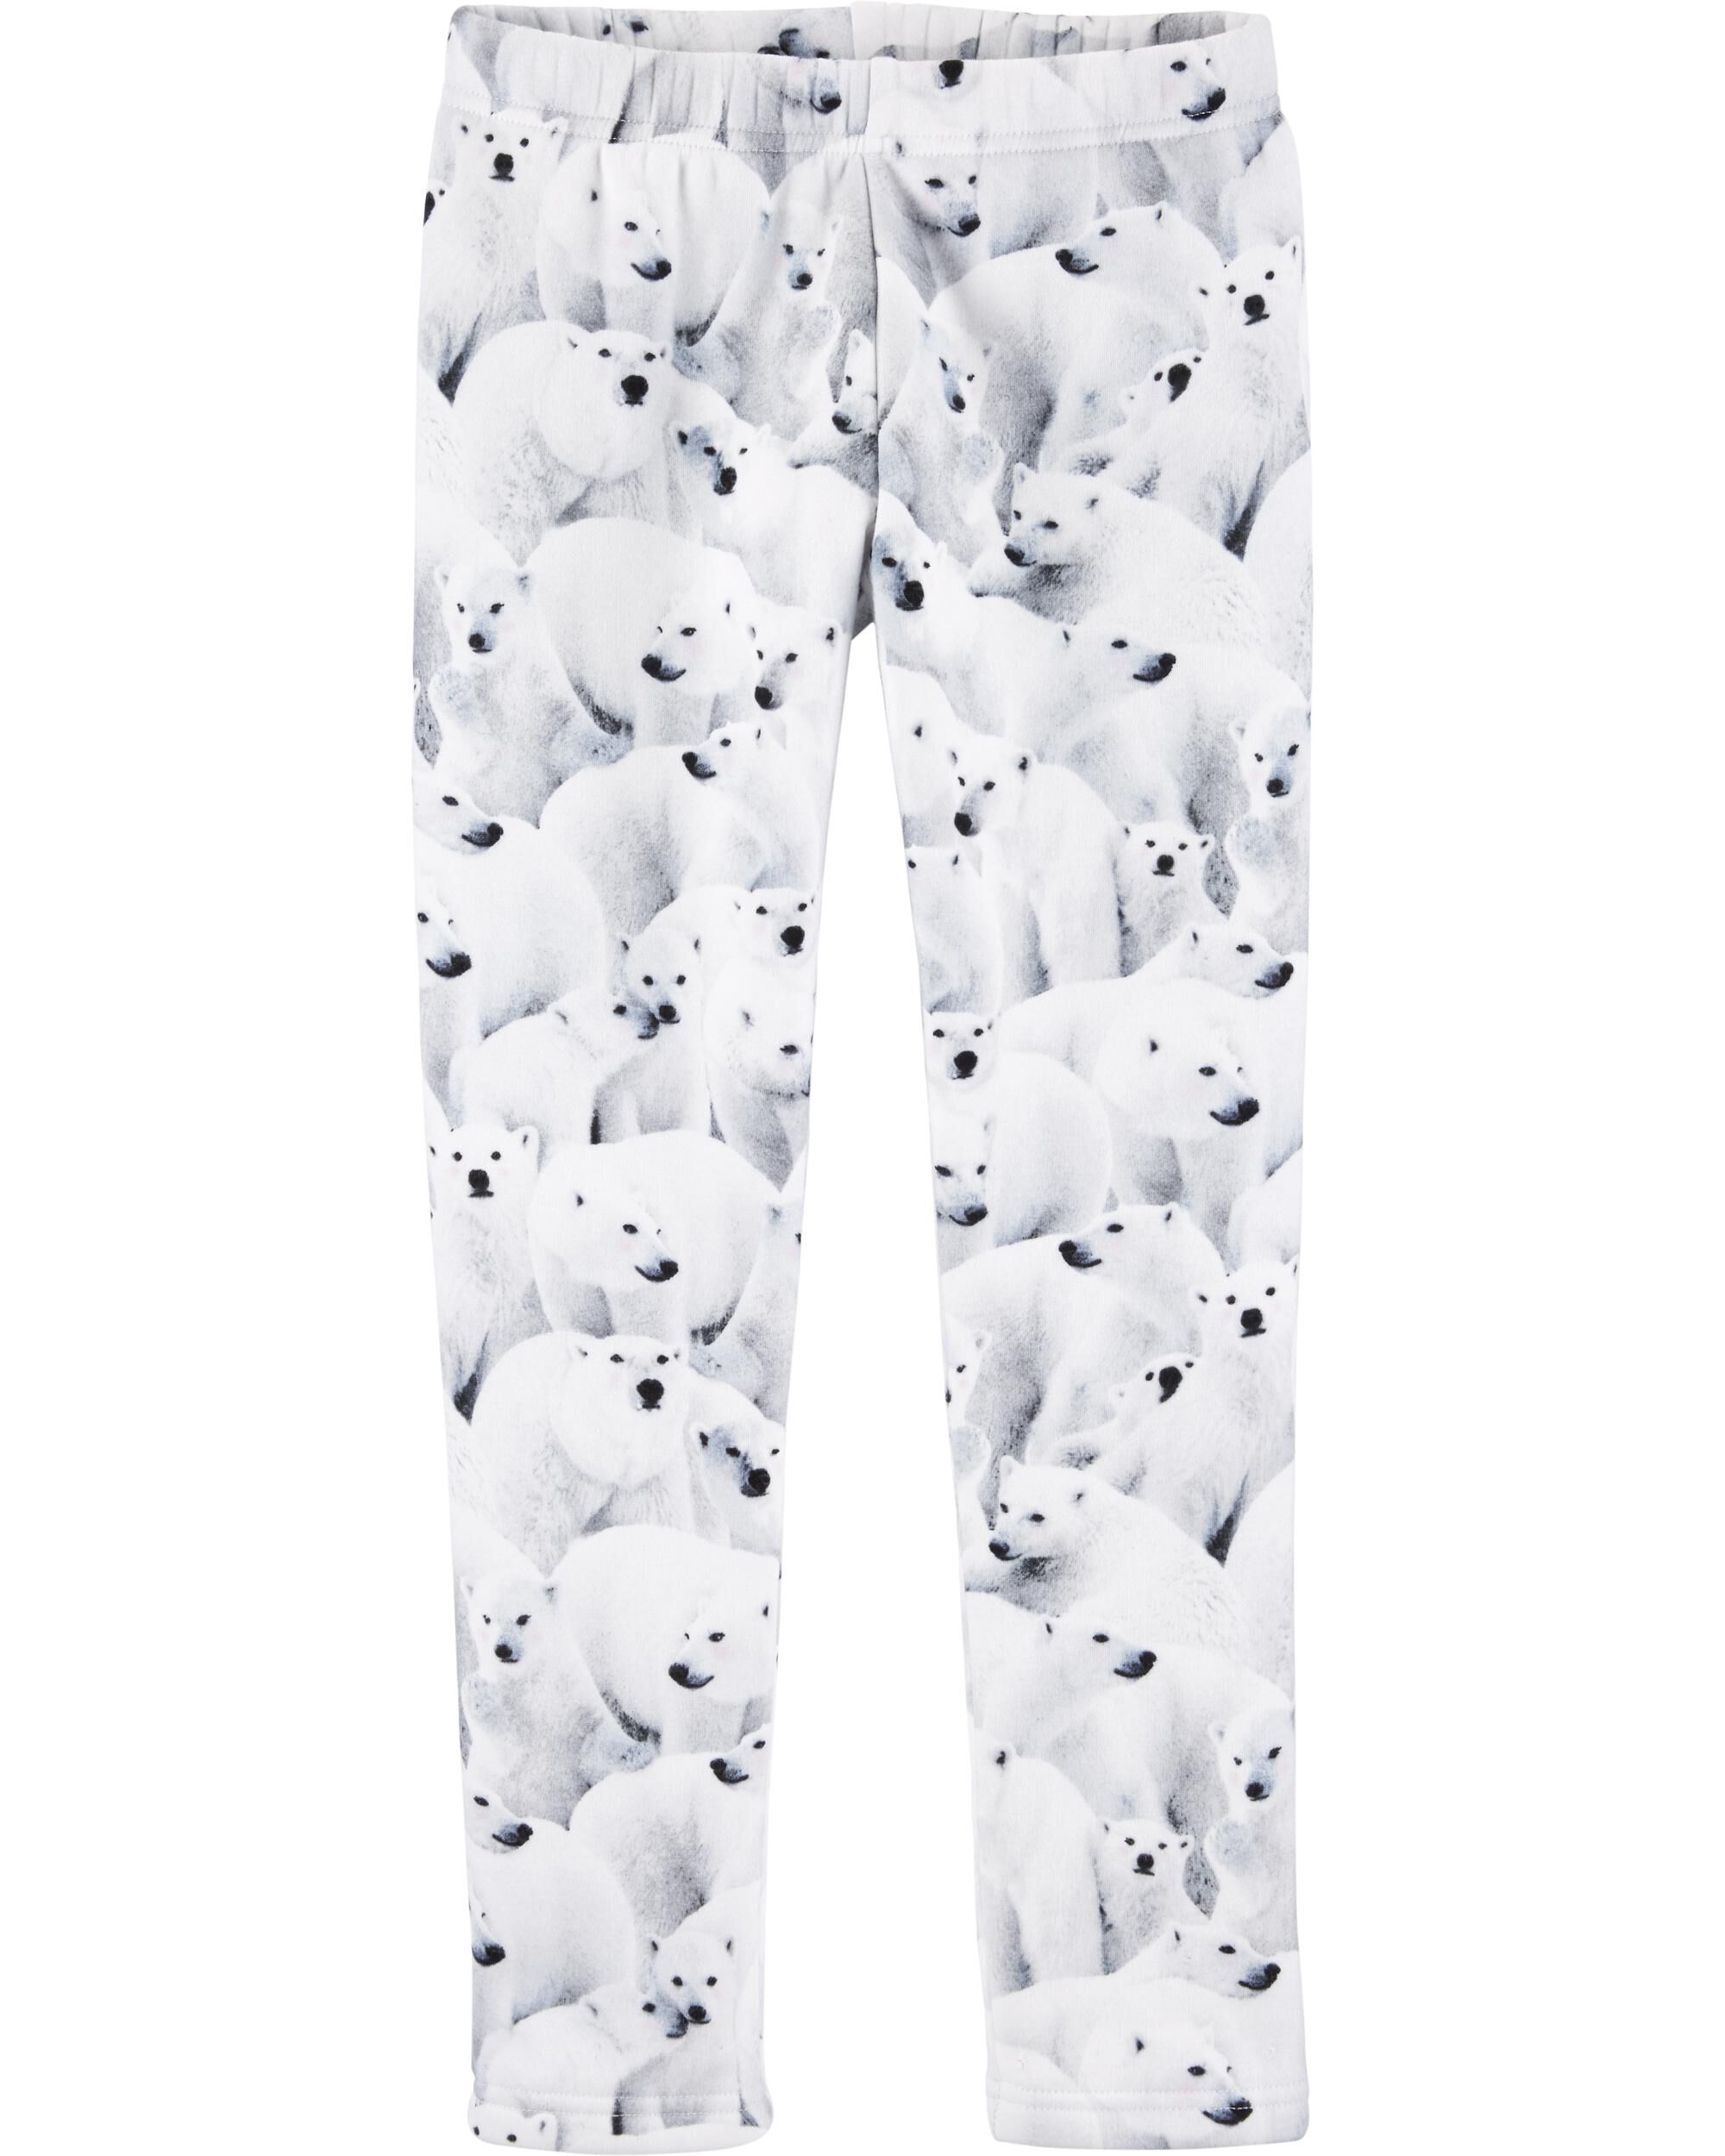 carter's polar bear pajamas